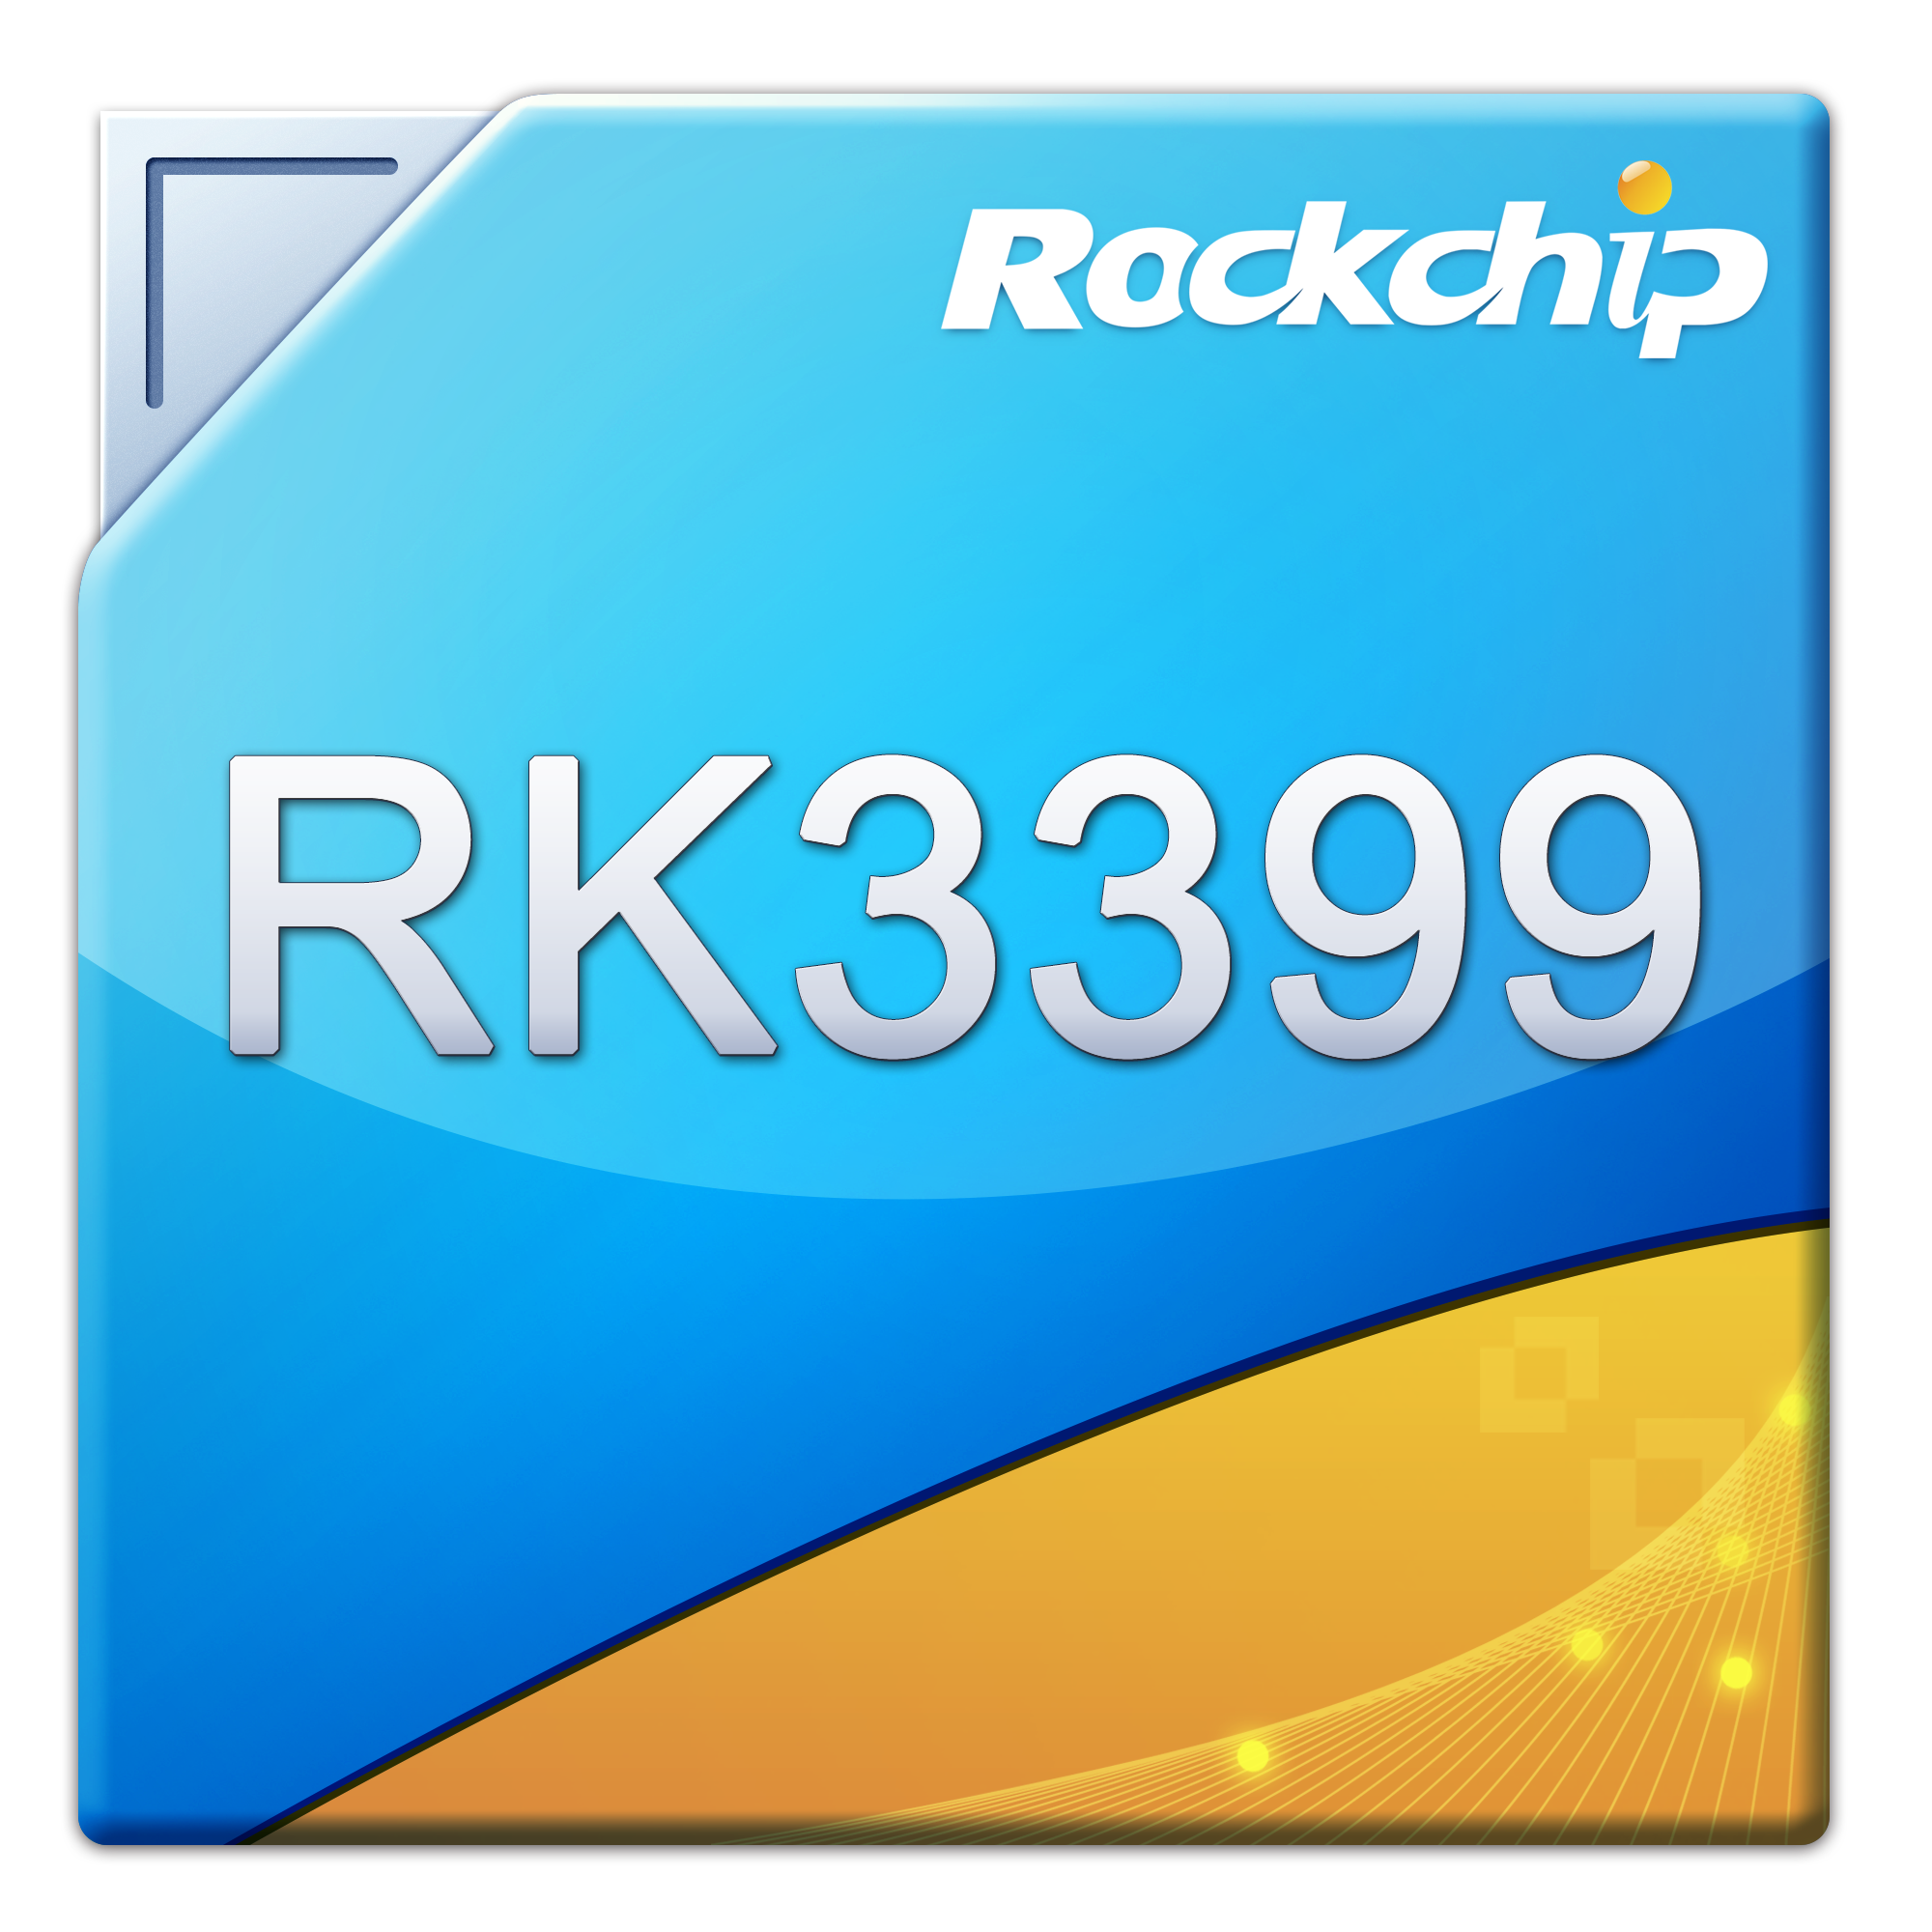 Rockchip rk3588. Rk3399. Rockchip 3399. Rockchip rk3368. Rockchip rk3568.